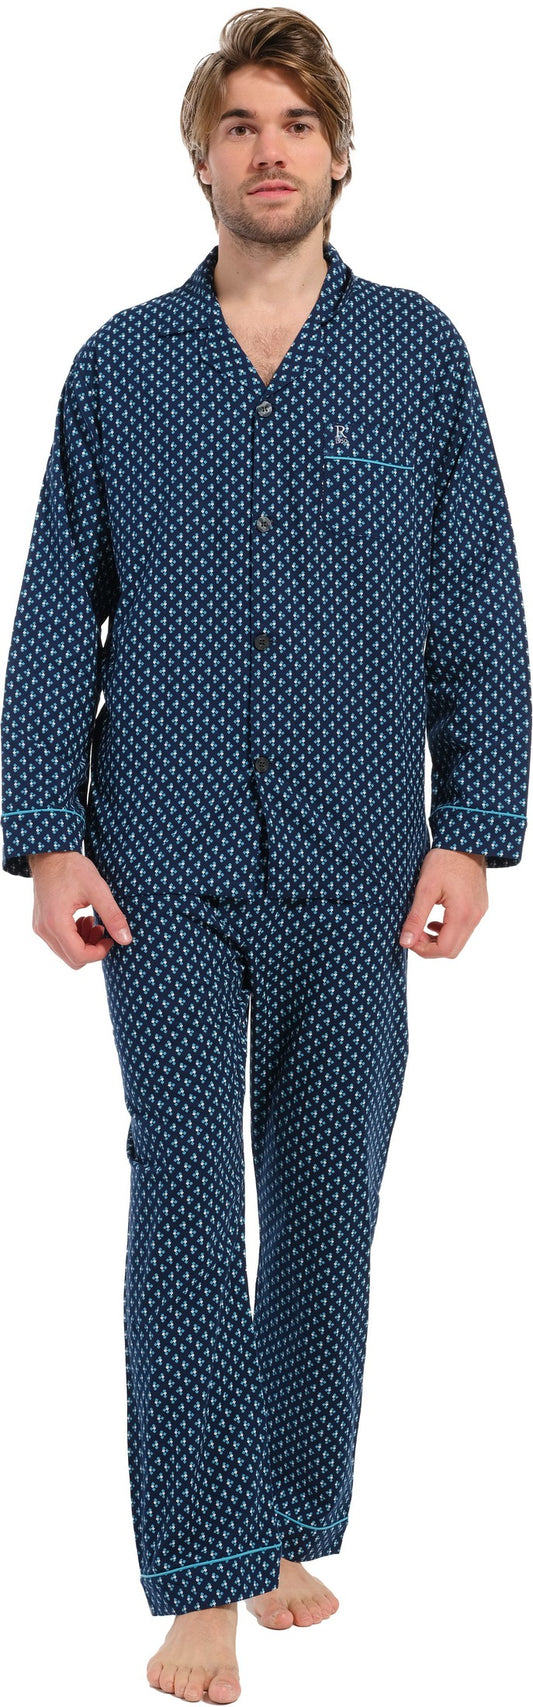 Pyjama 27232-708-6 526 blauw